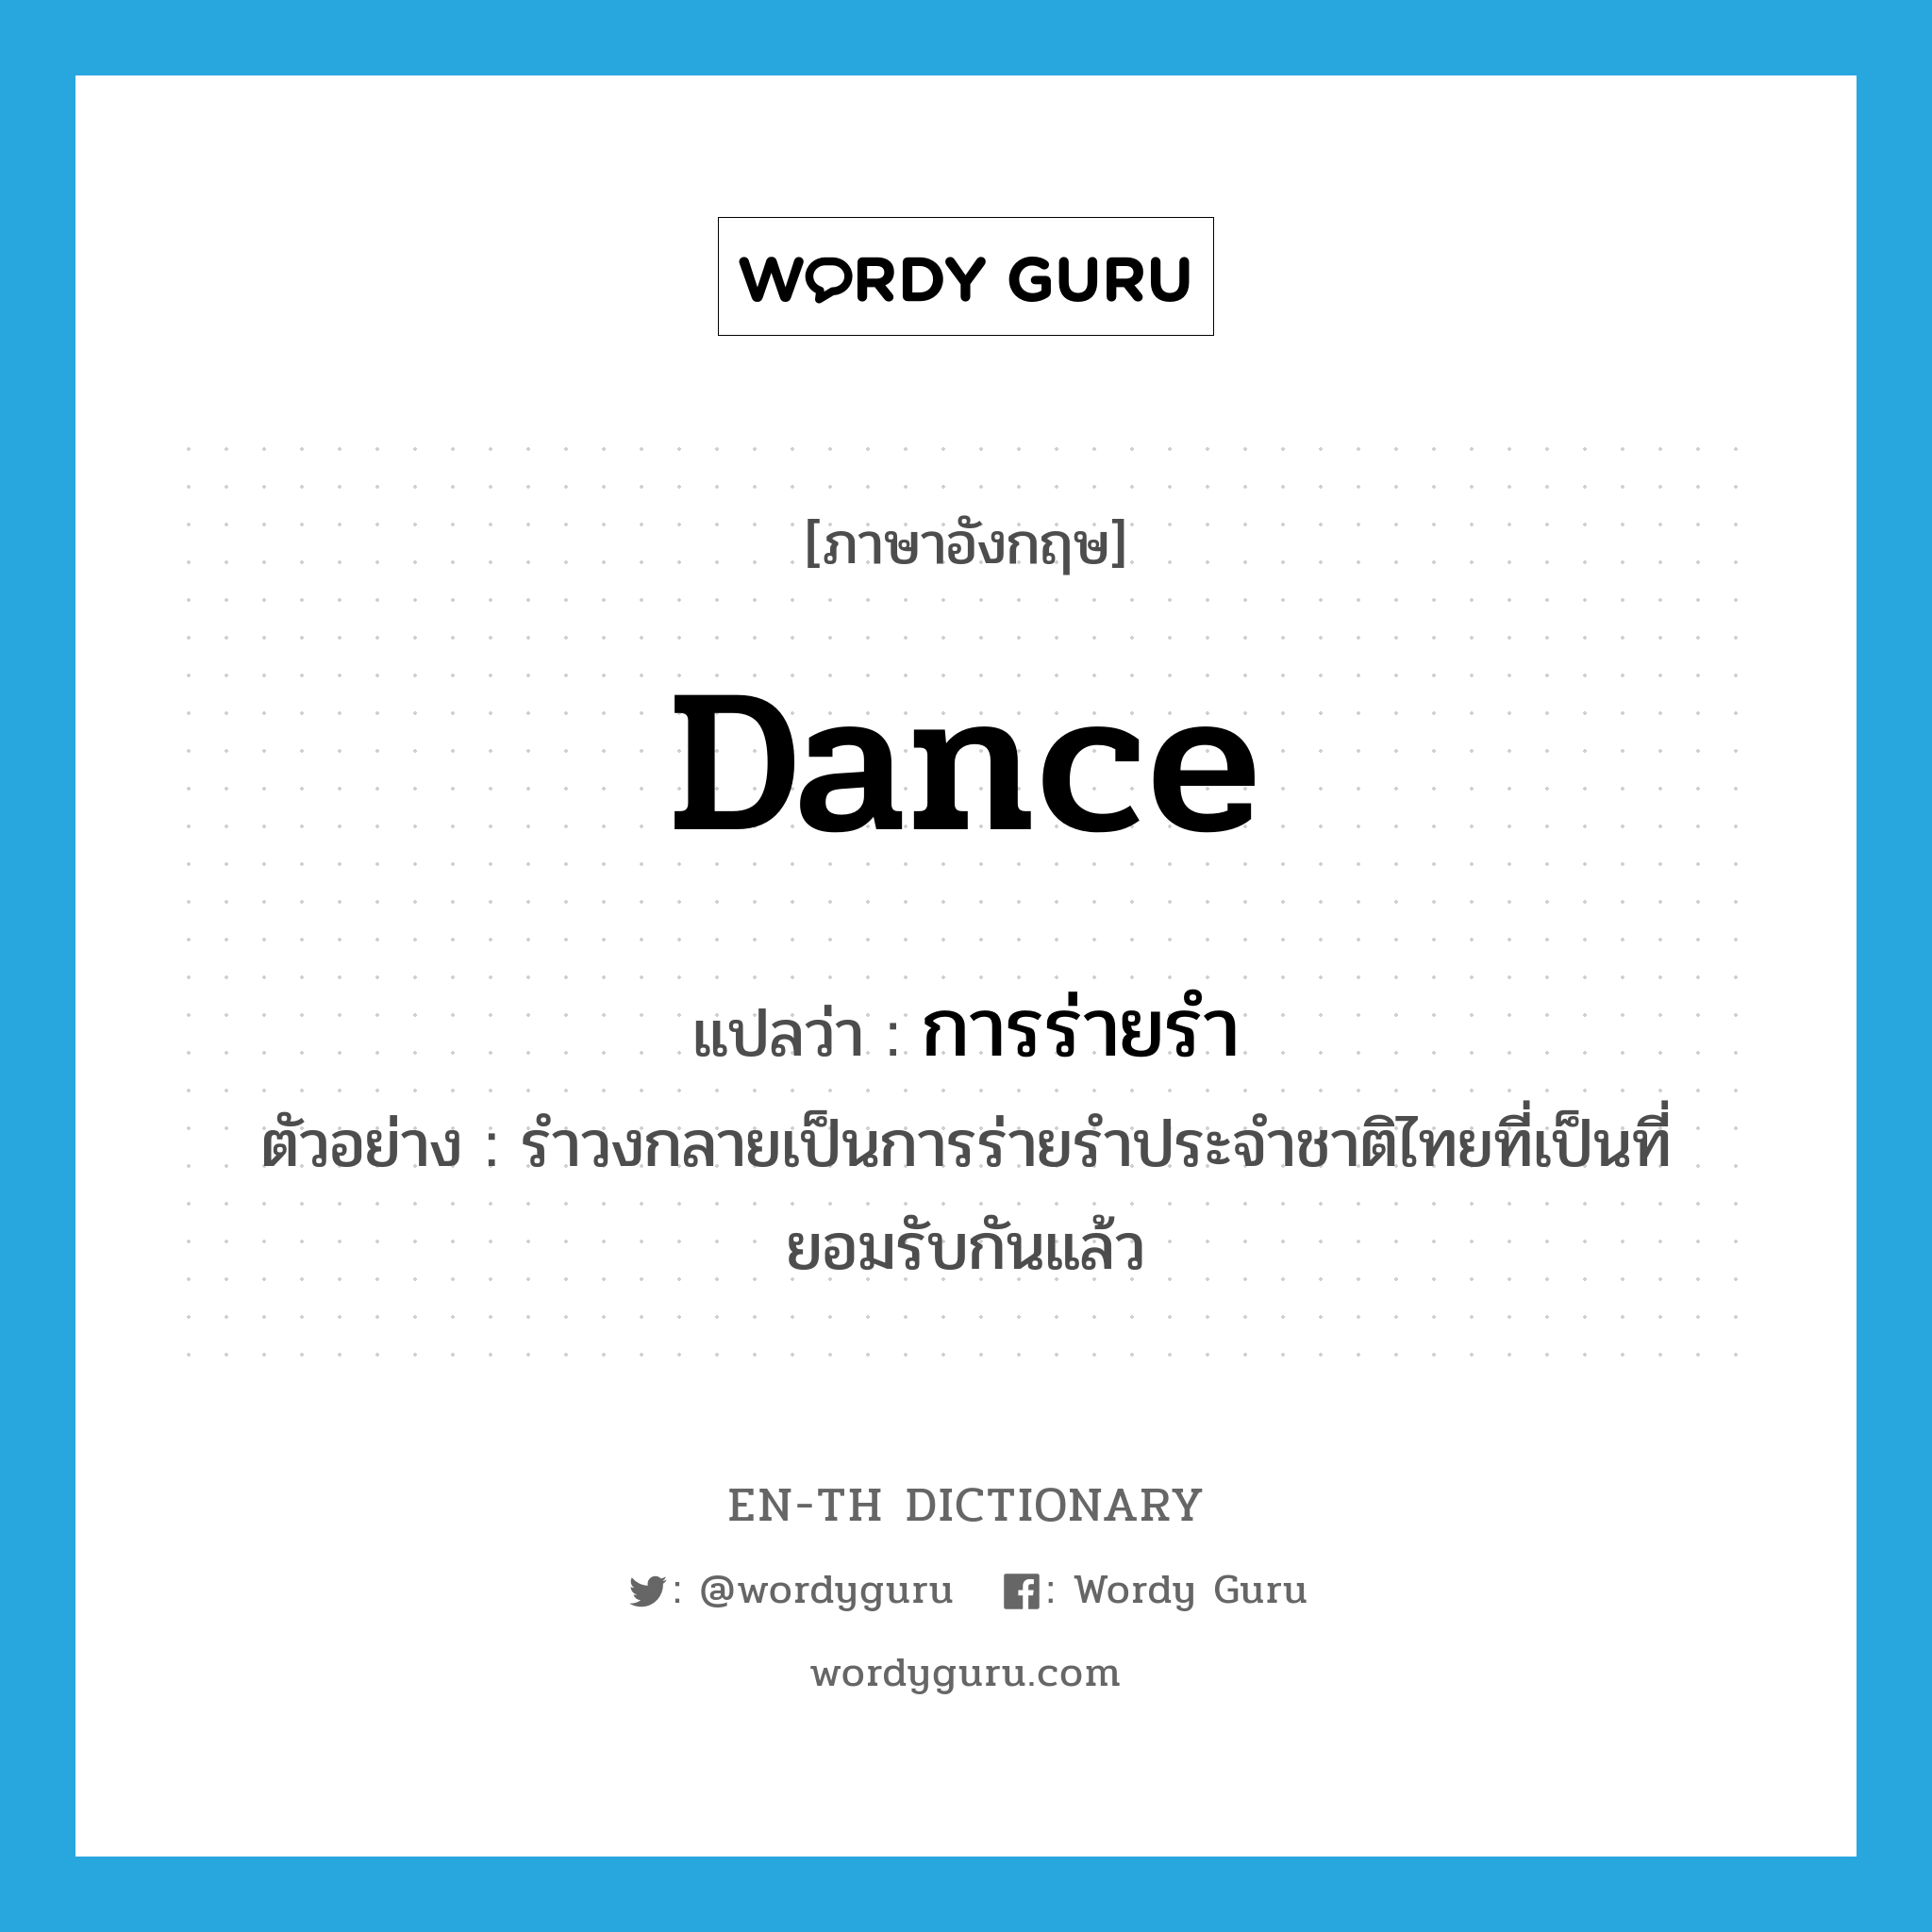 การร่ายรำ ภาษาอังกฤษ?, คำศัพท์ภาษาอังกฤษ การร่ายรำ แปลว่า dance ประเภท N ตัวอย่าง รำวงกลายเป็นการร่ายรำประจำชาติไทยที่เป็นที่ยอมรับกันแล้ว หมวด N